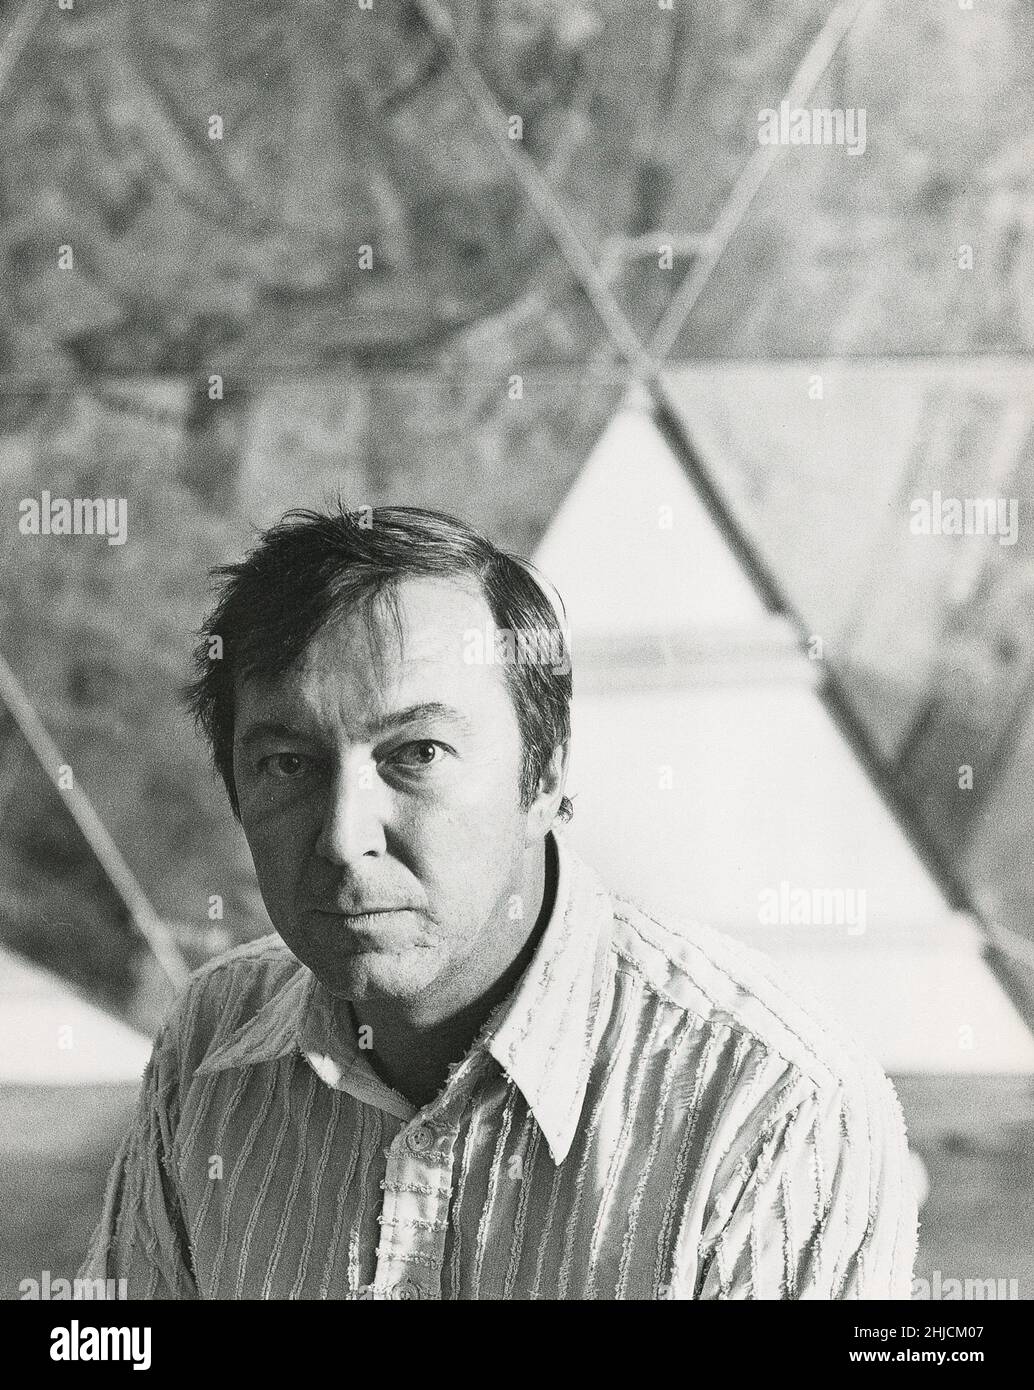 Un ritratto del pop americano e neo-dadaista artista Jasper Johns (nato nel 1930). Foto Stock